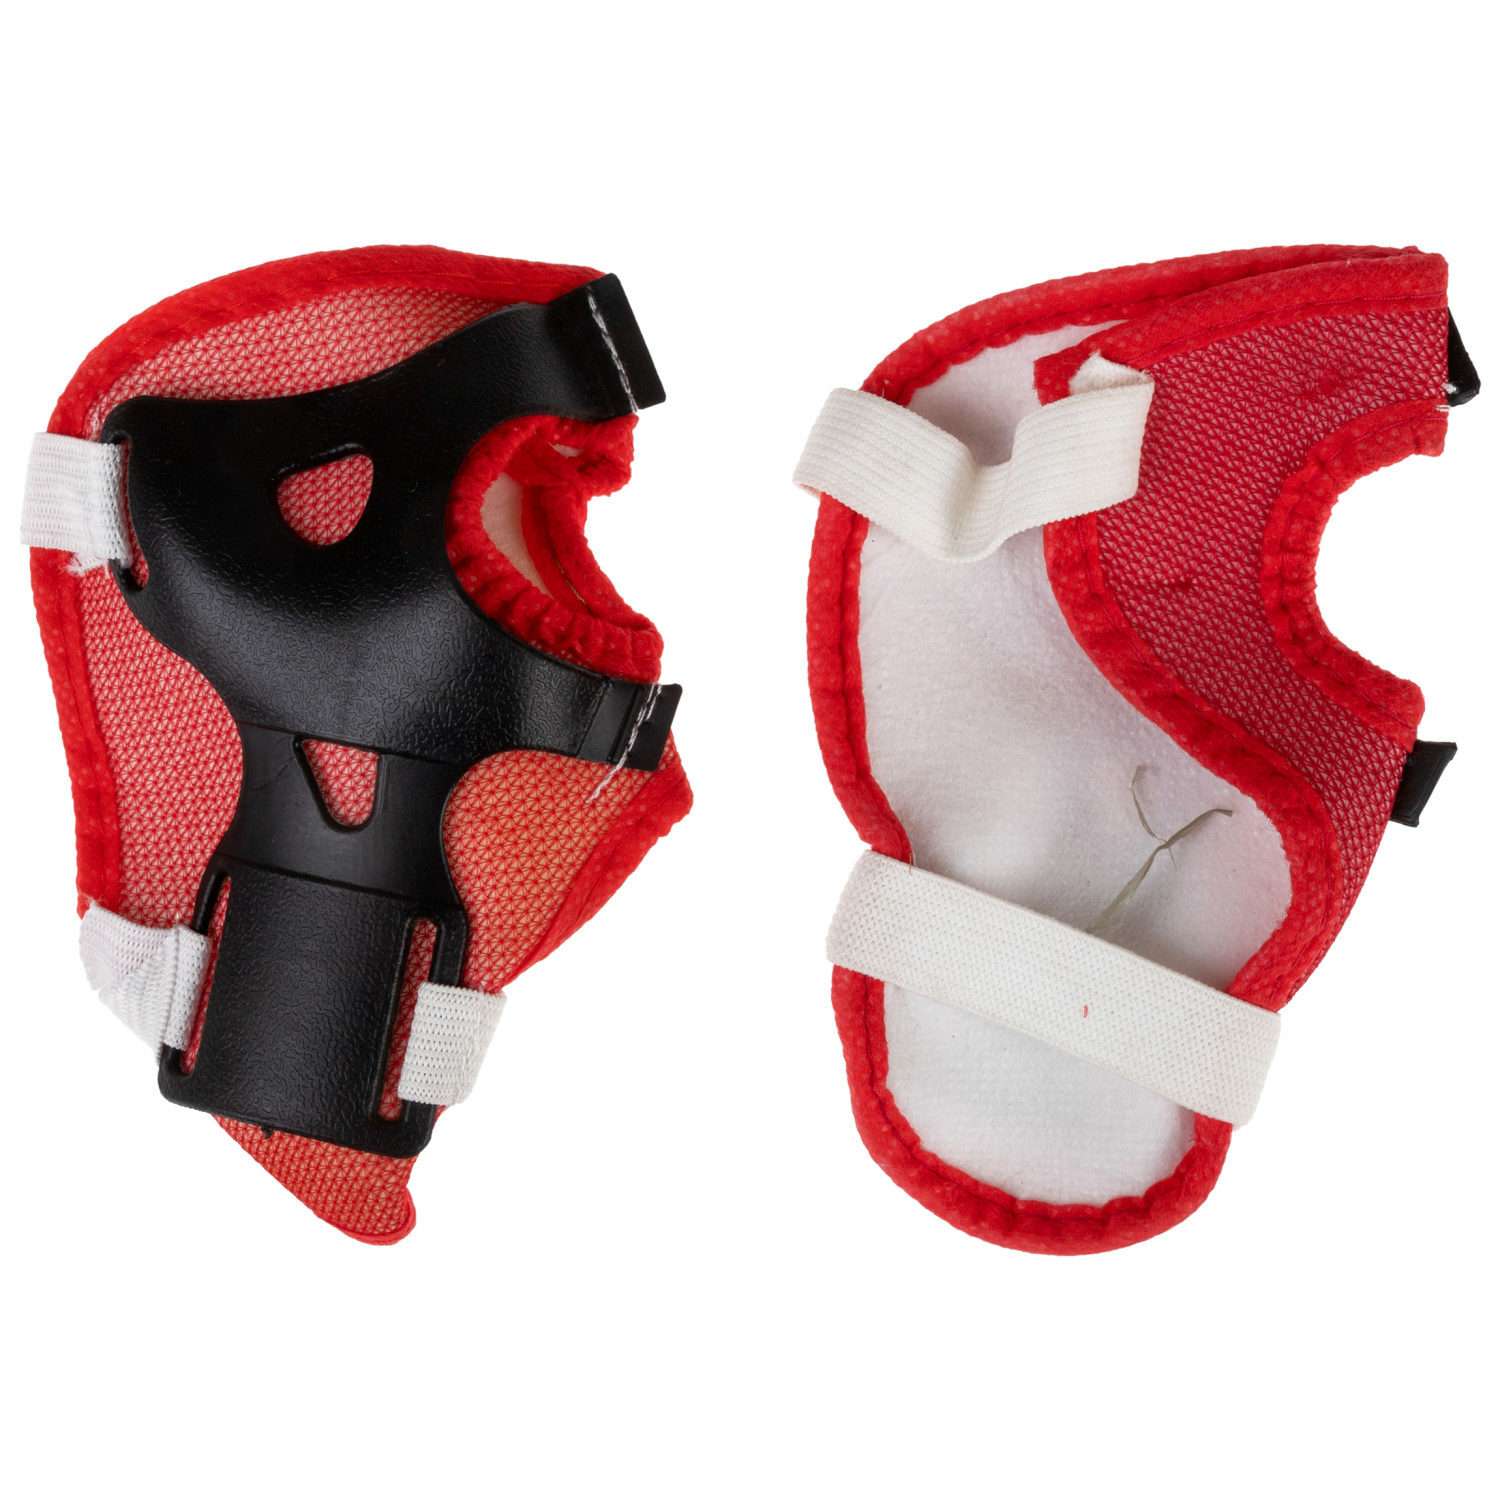 Ролики Navigator детские раздвижные 34 - 37 размер с защитой и шлемом красный - фото 18